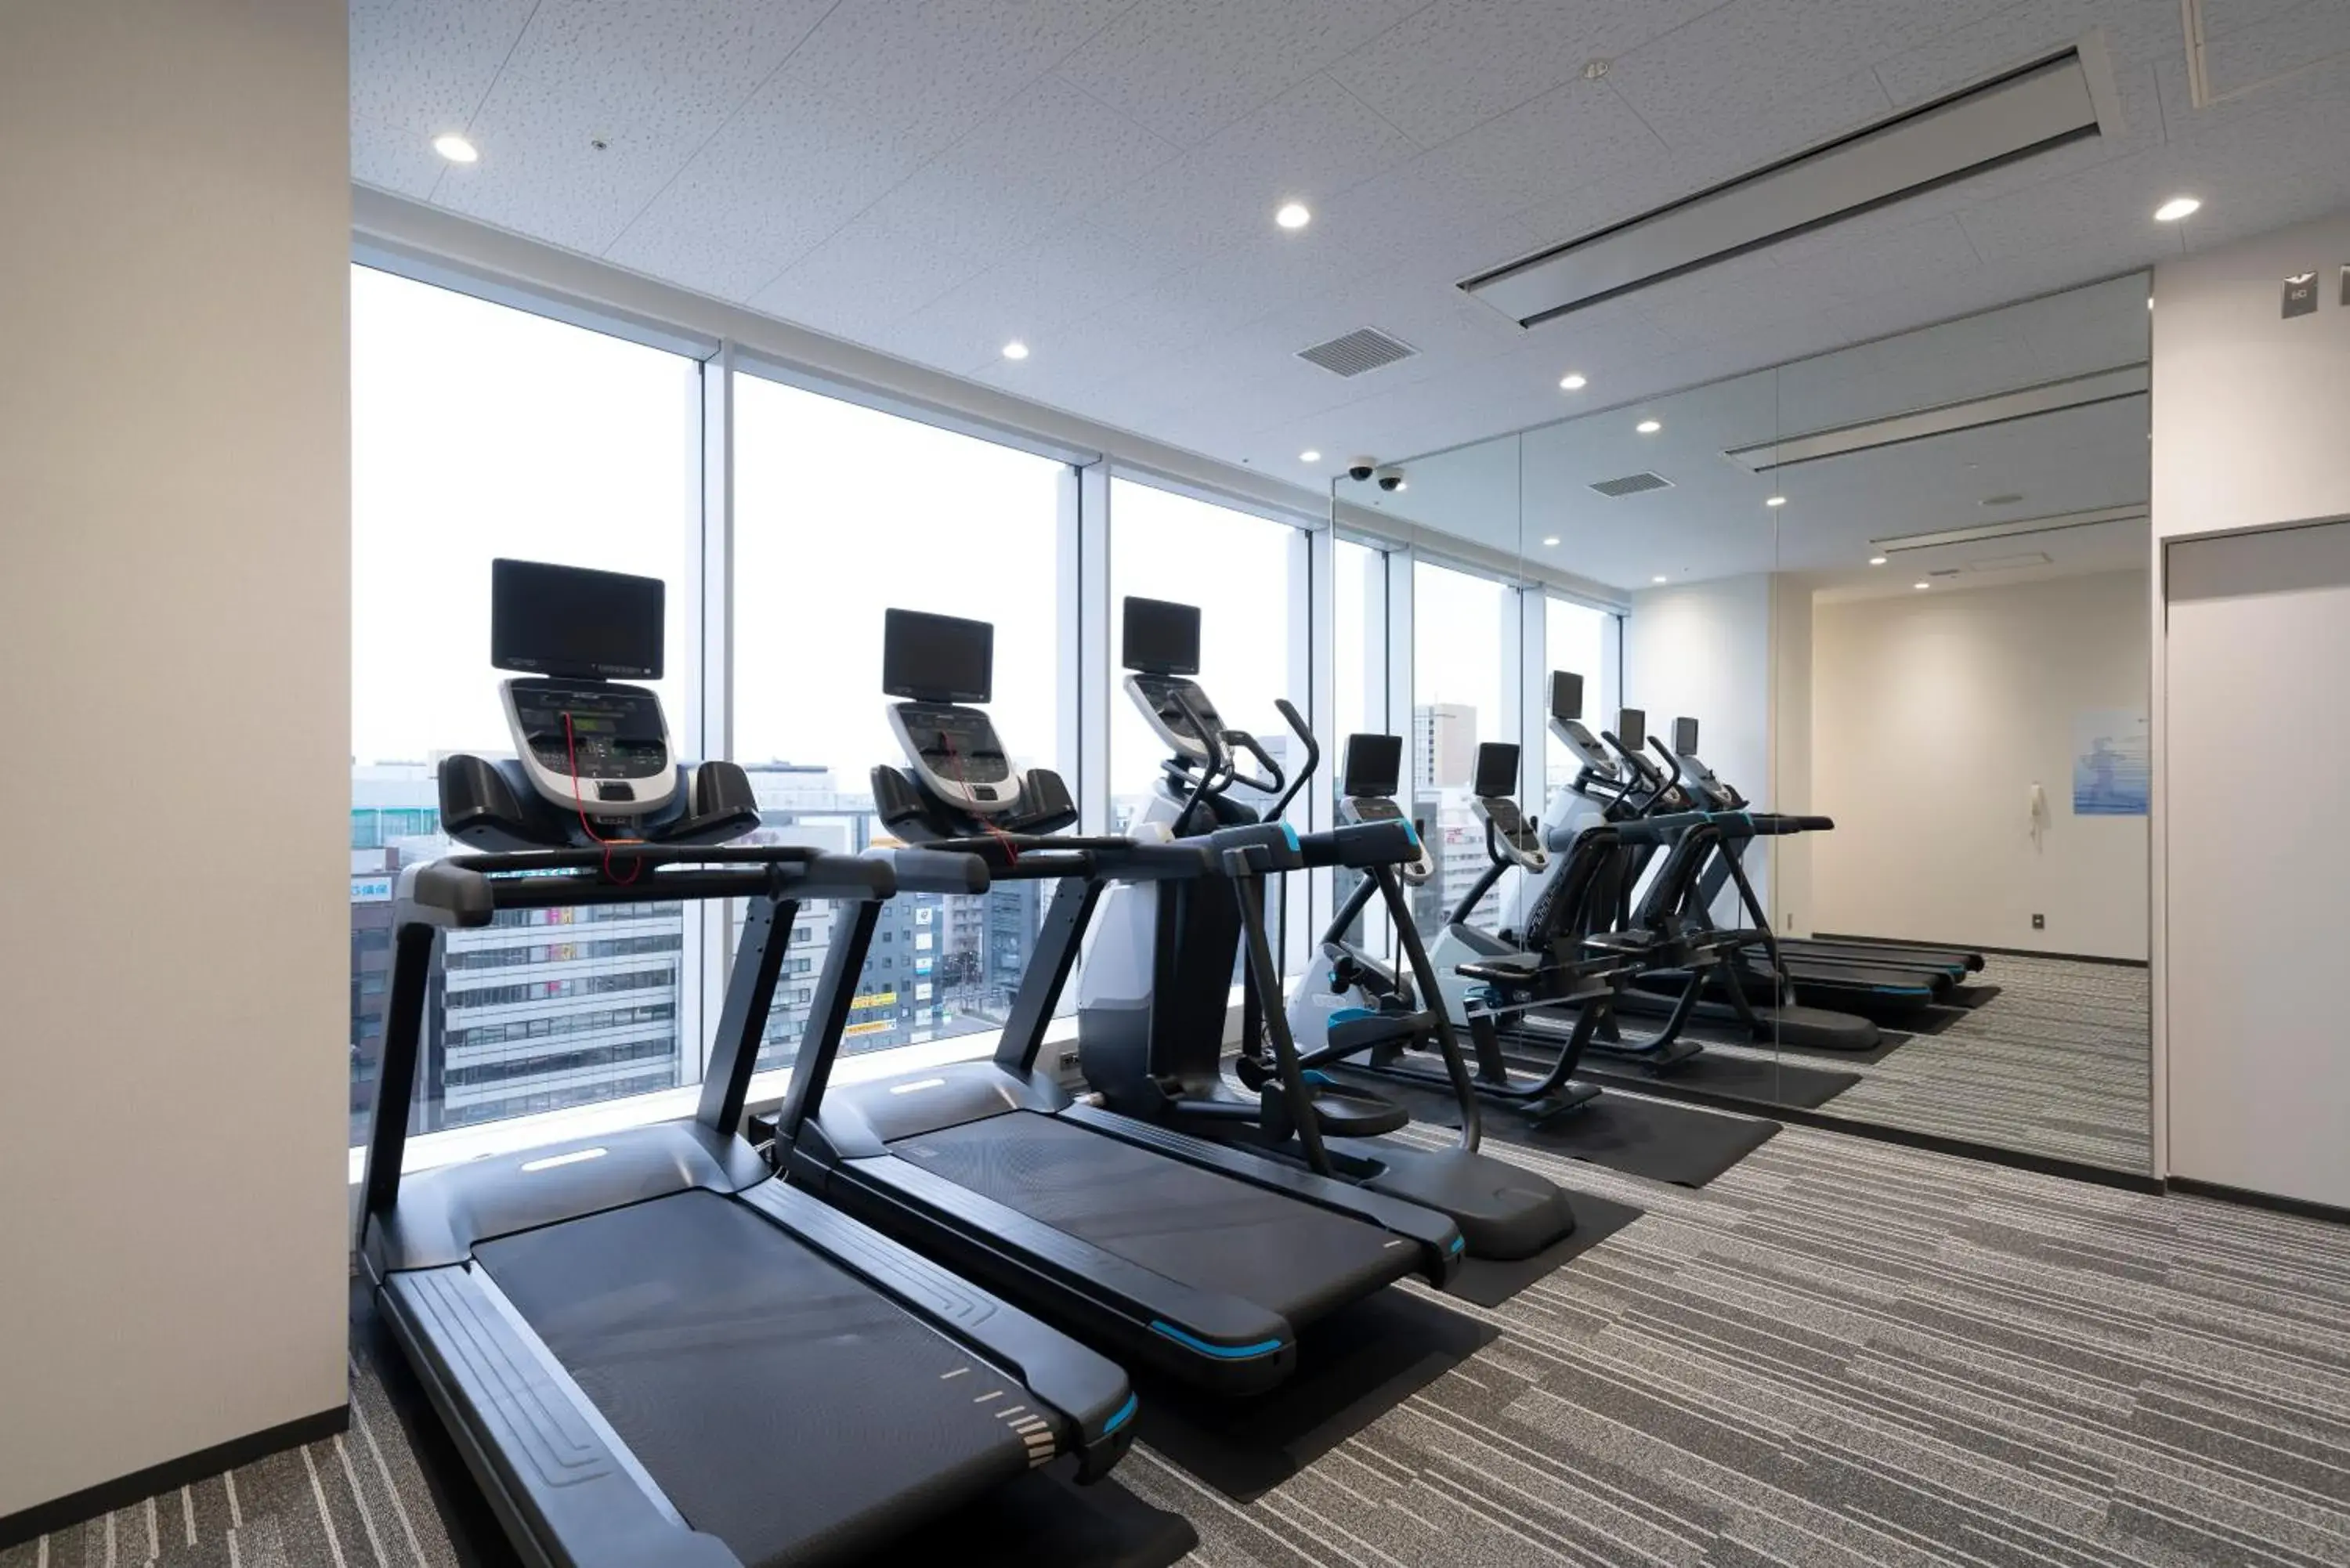 Fitness centre/facilities, Fitness Center/Facilities in Hotel Associa Shin-Yokohama